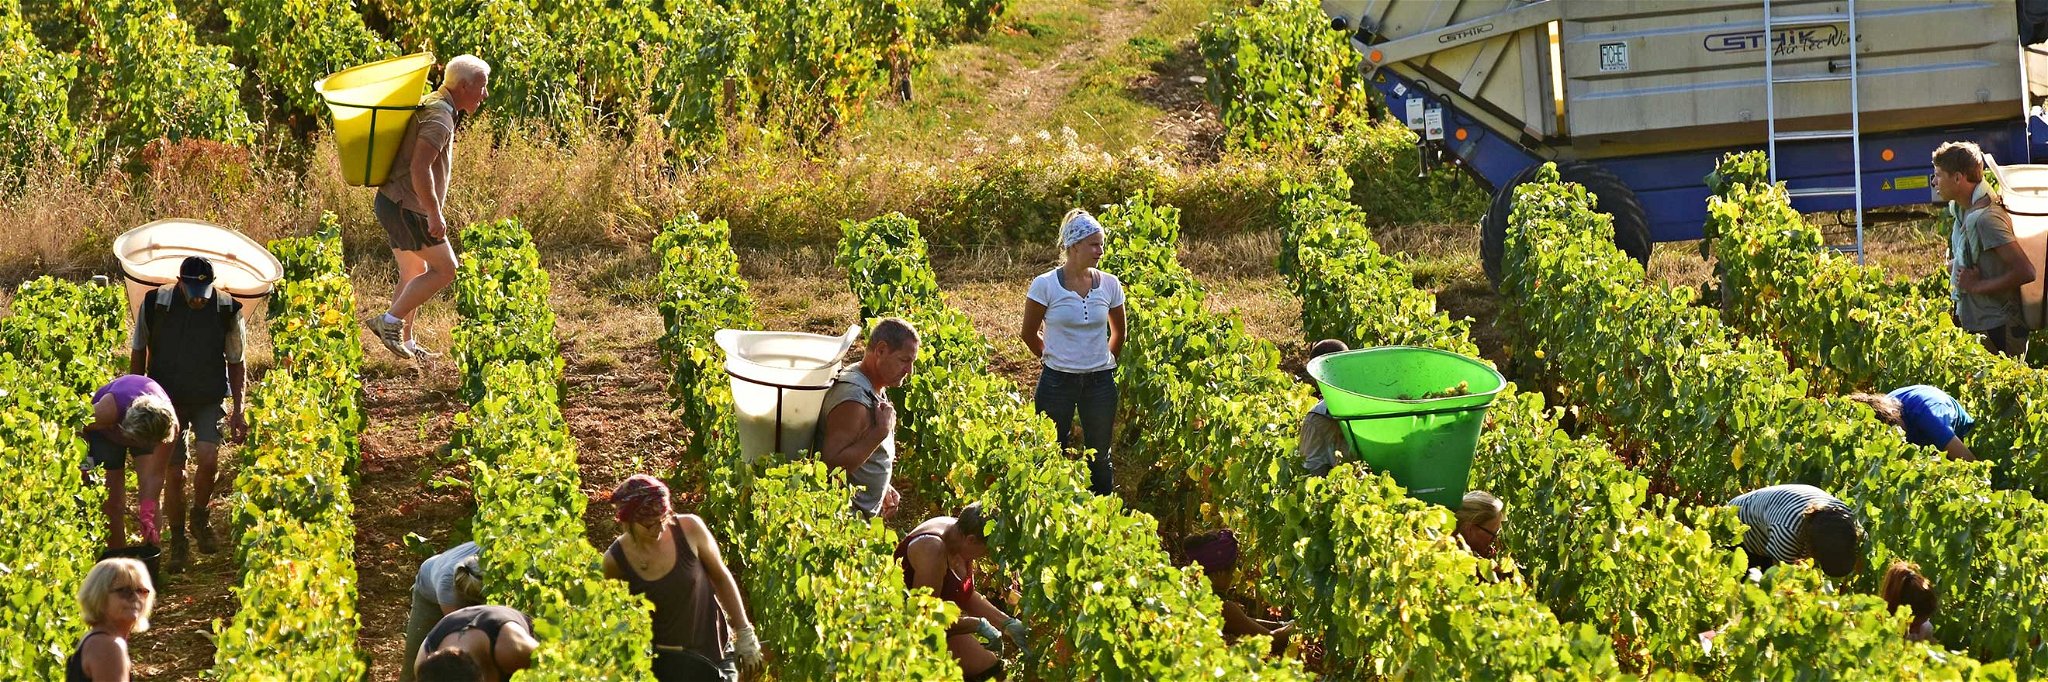 Die Saisonarbeitskräfte in den Weinbergen kommen nicht selten aus Osteuropa – mit Corona sind aber die Grenzen momentan dicht.